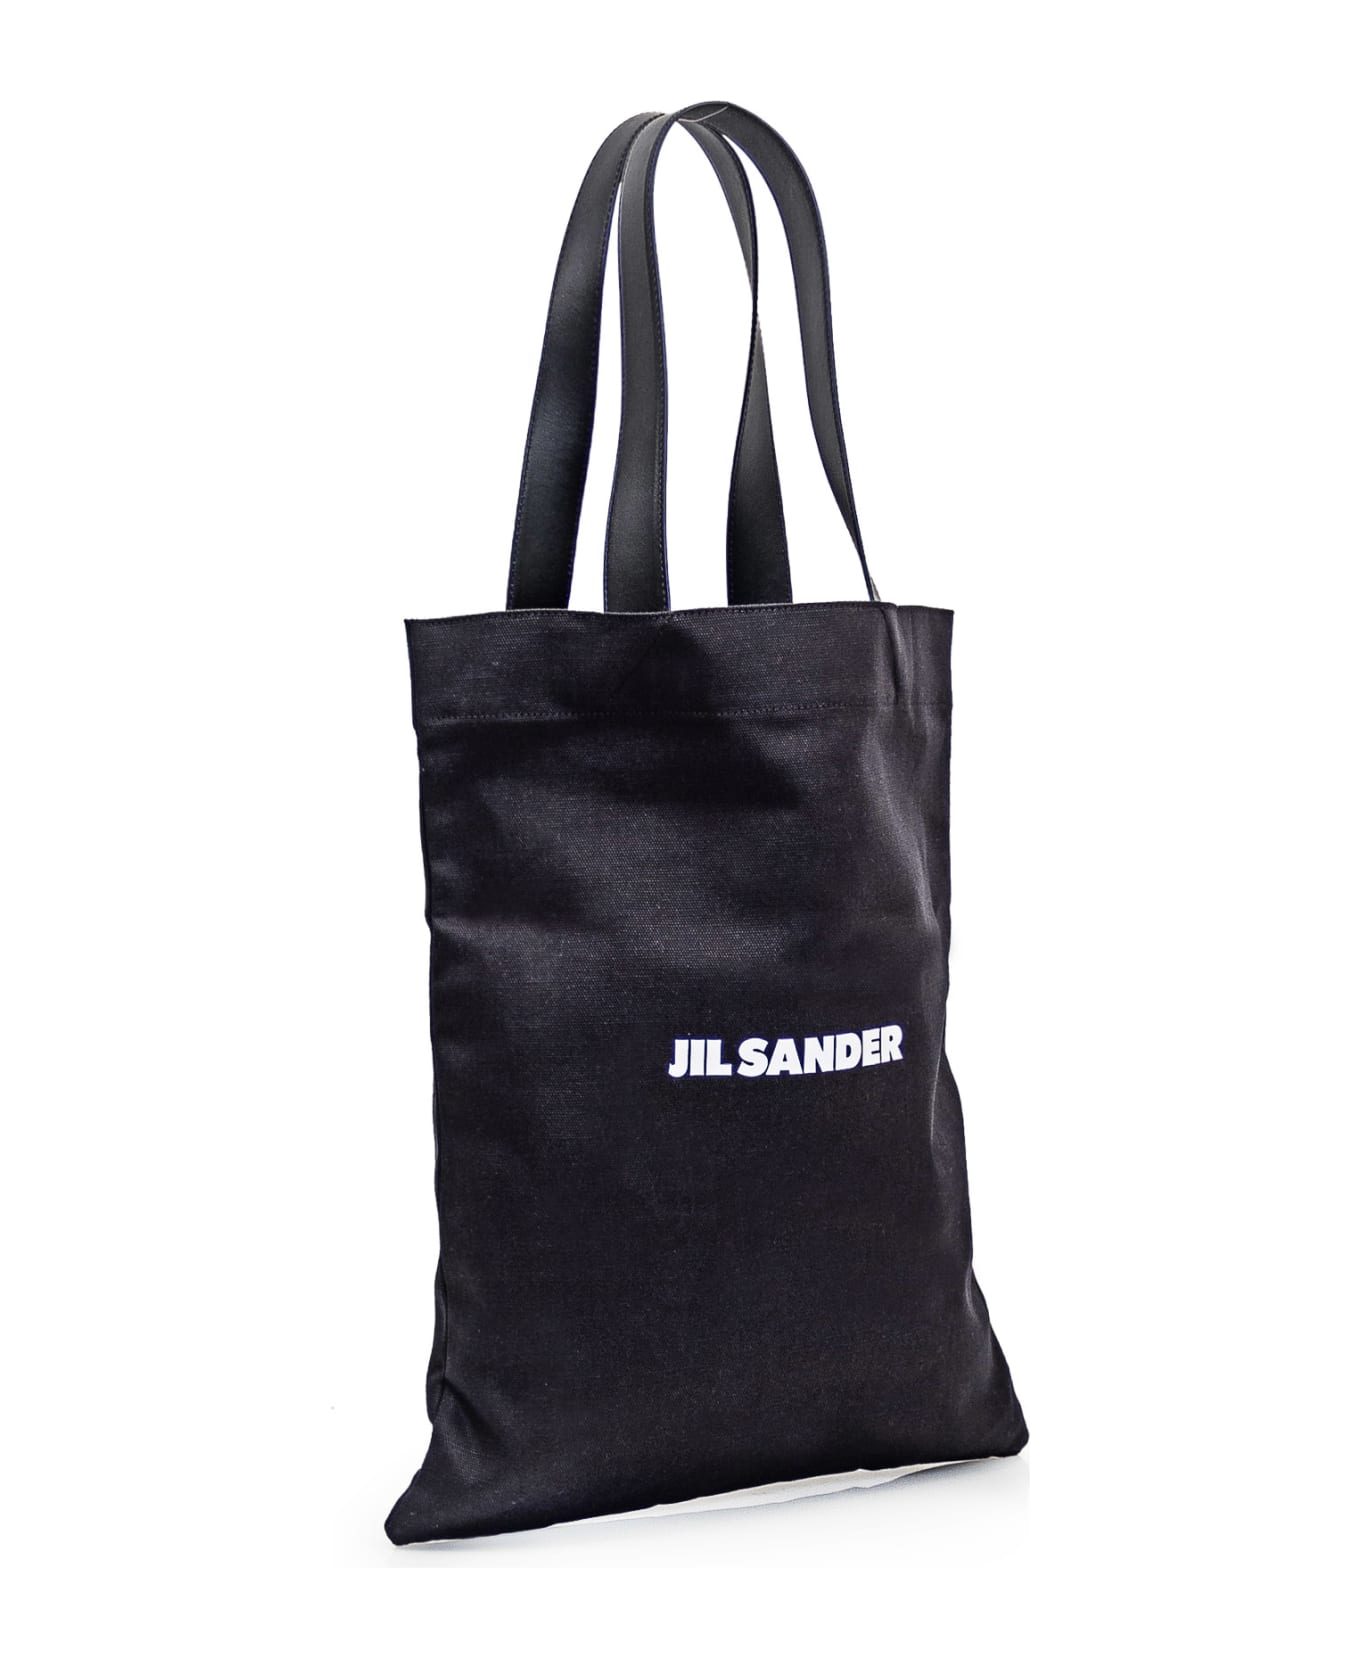 Jil Sander Black Tela Bag - 001